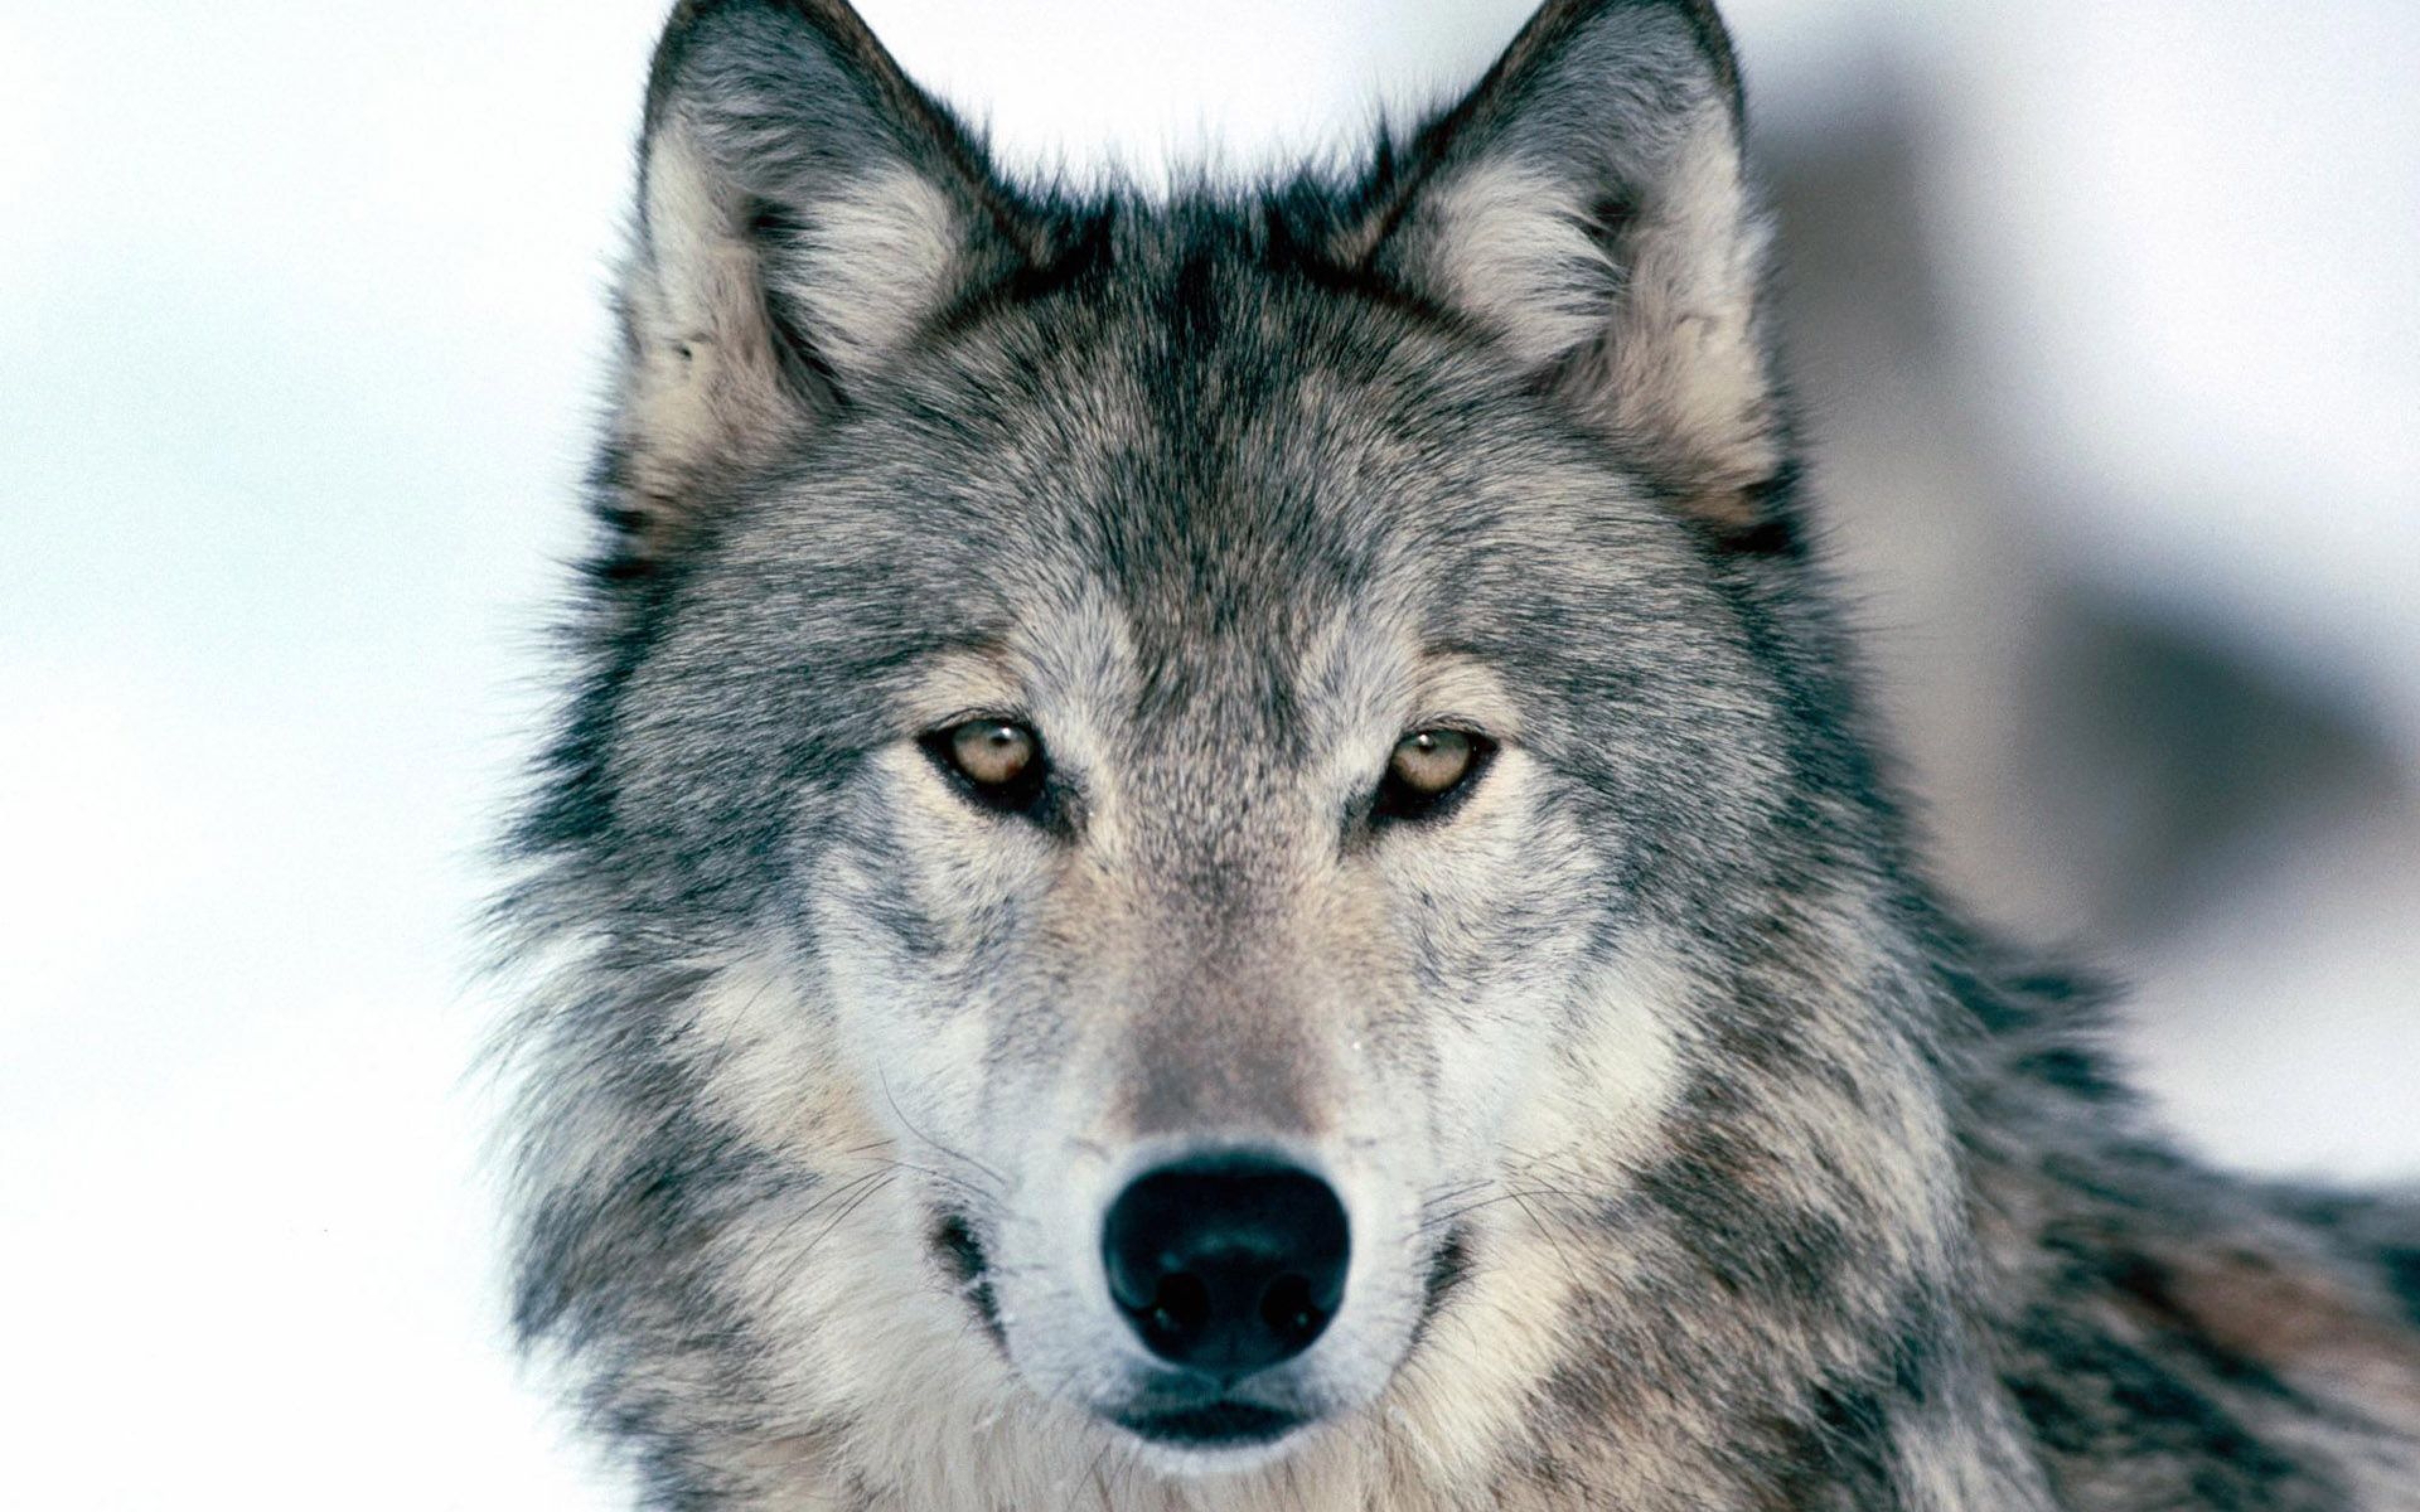 R wolf. Волк. Волк серый. Красивый волк. Изображение волка.